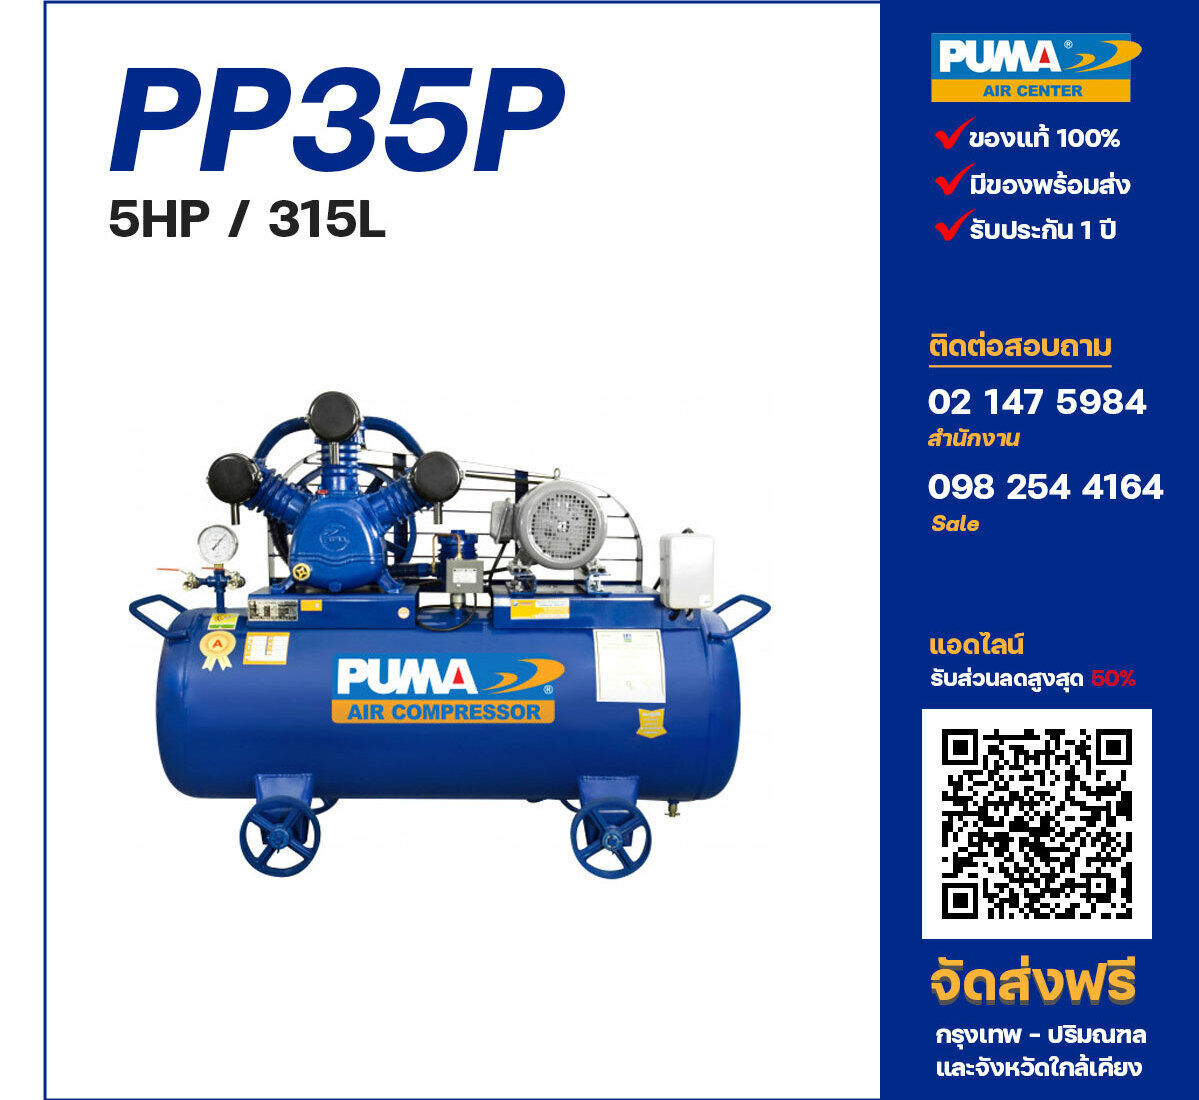 ปั๊มลมพูม่า PUMA PP35P-PPM220V/380V ปั๊มลมลูกสูบ ขนาด 3 สูบ 5 แรงม้า 315 ลิตร PUMA พร้อมมอเตอร์ PUMA ไฟ 220V/380V ส่งฟรี กรุงเทพฯ-ปริมณฑล รับประกัน 1 ปี